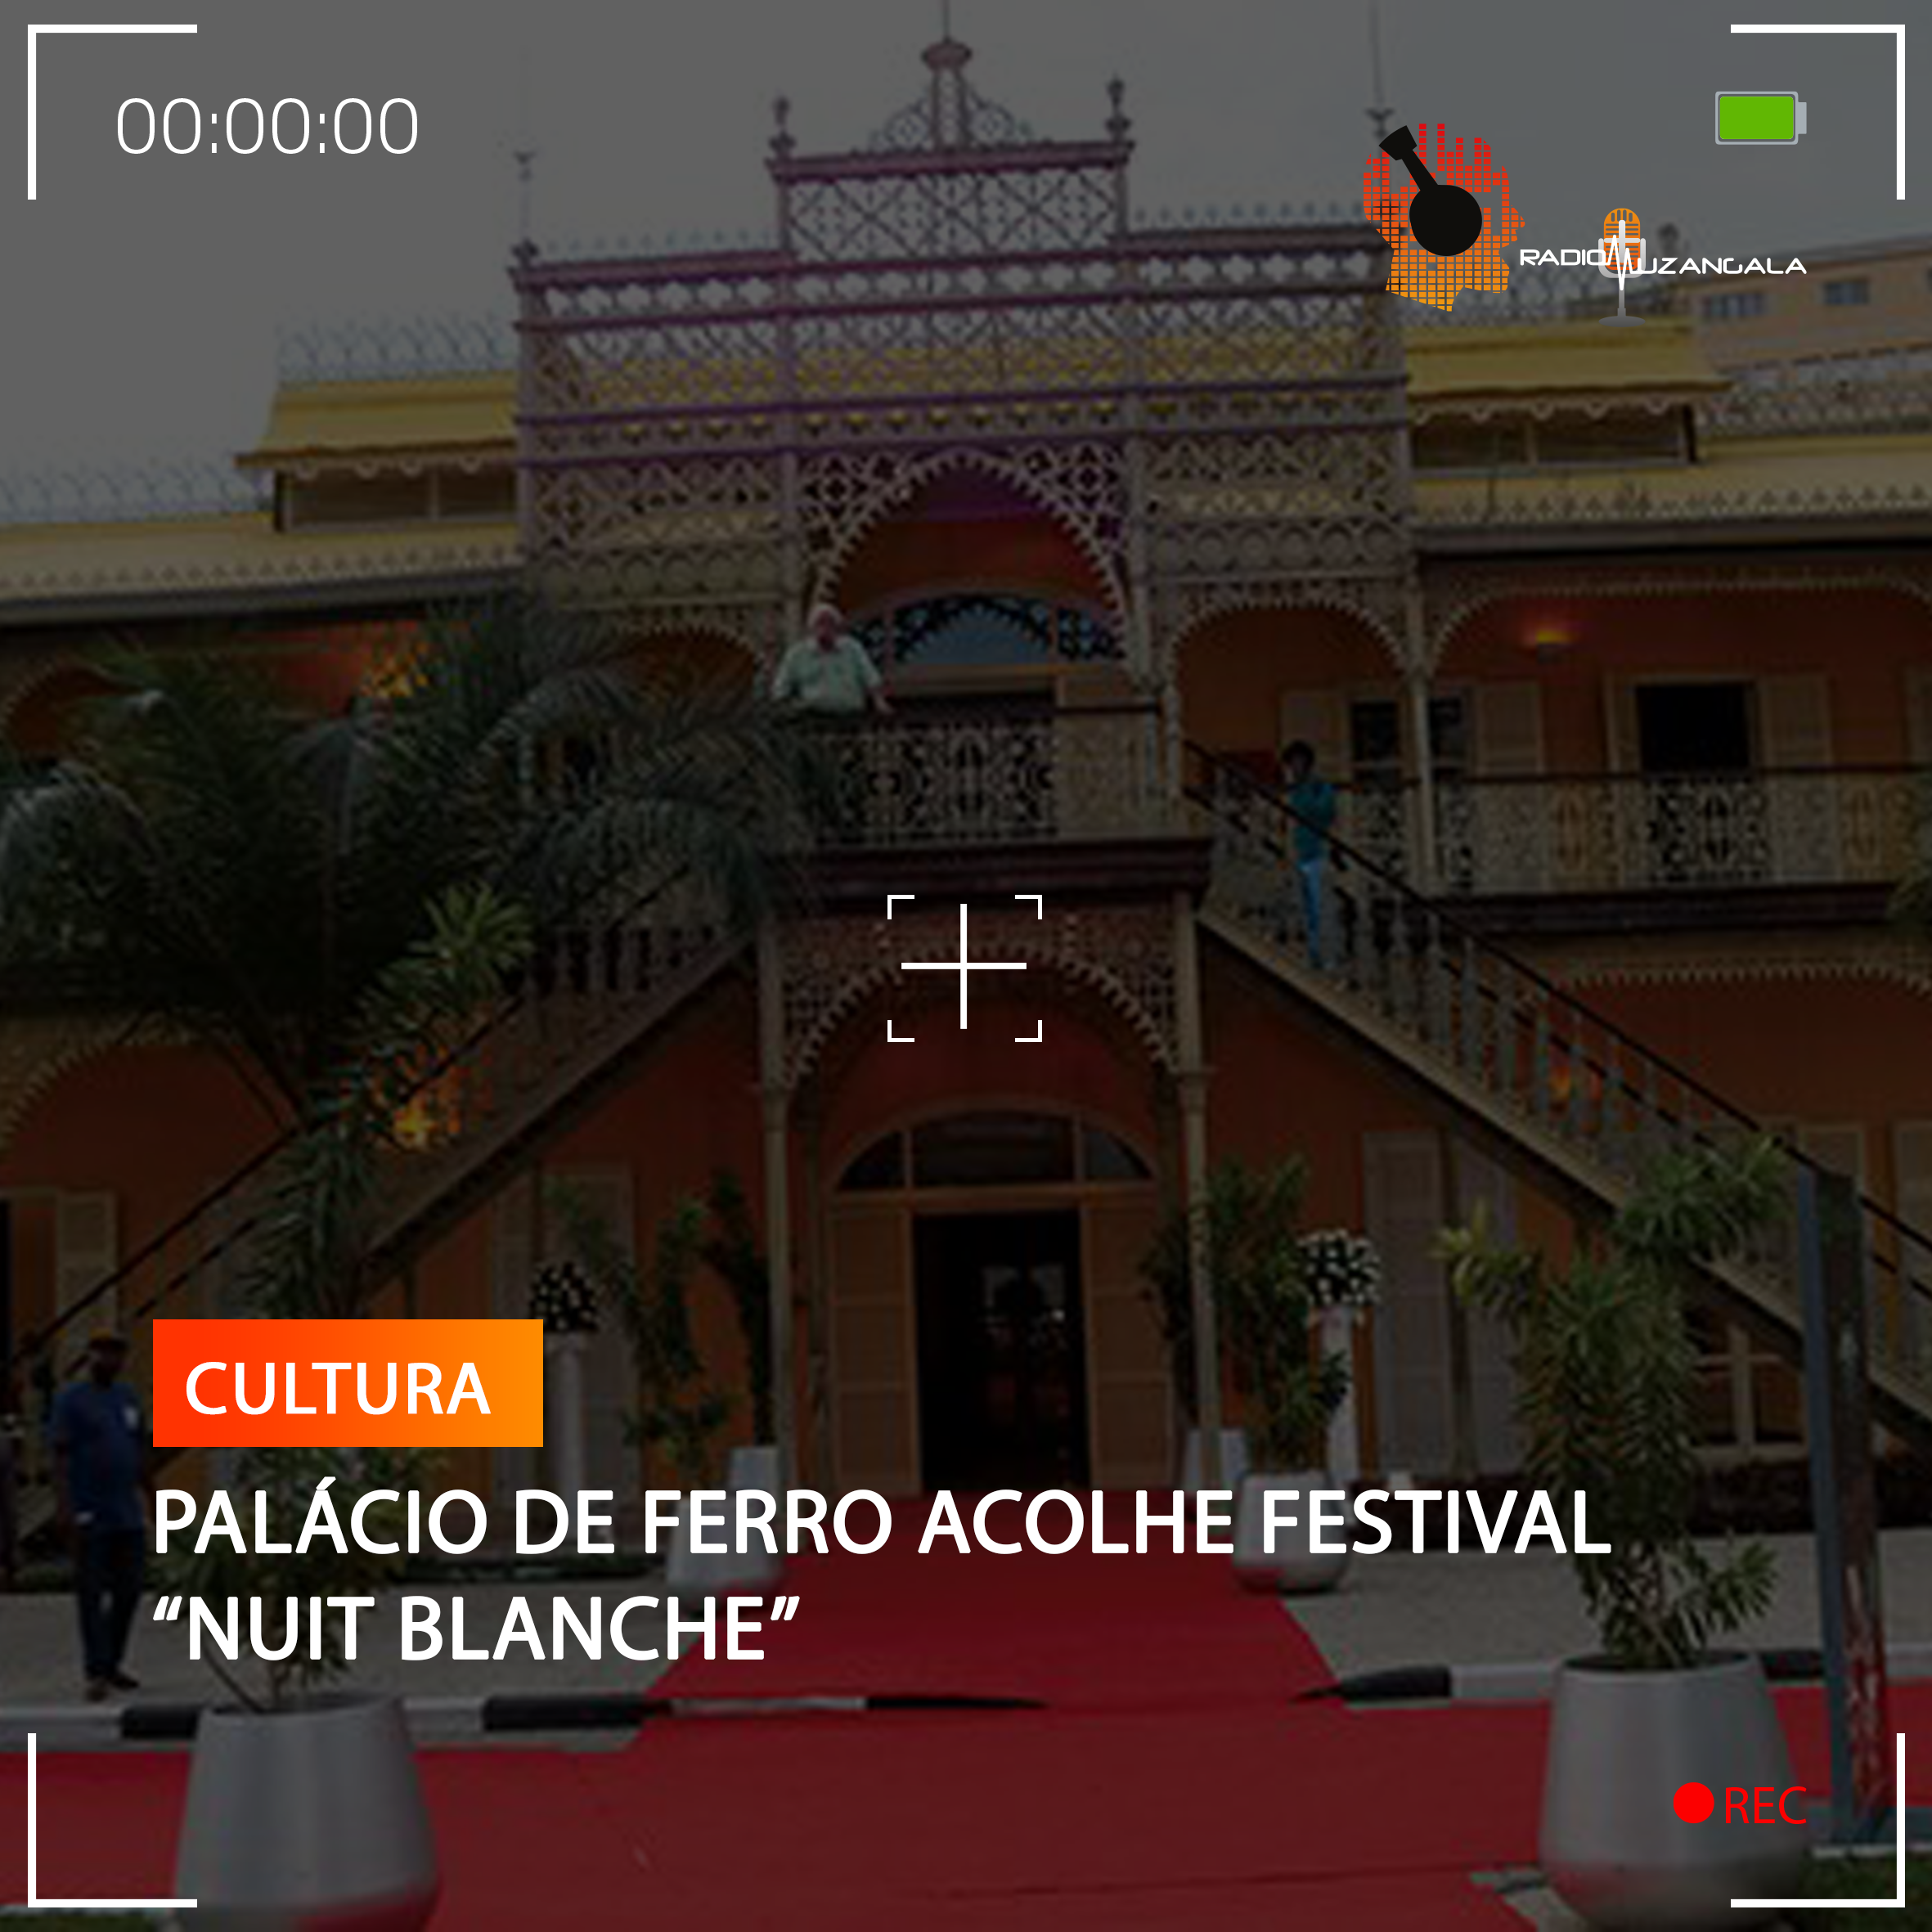  PALÁCIO DE FERRO ACOLHE FESTIVAL “NUIT BLANCHE”